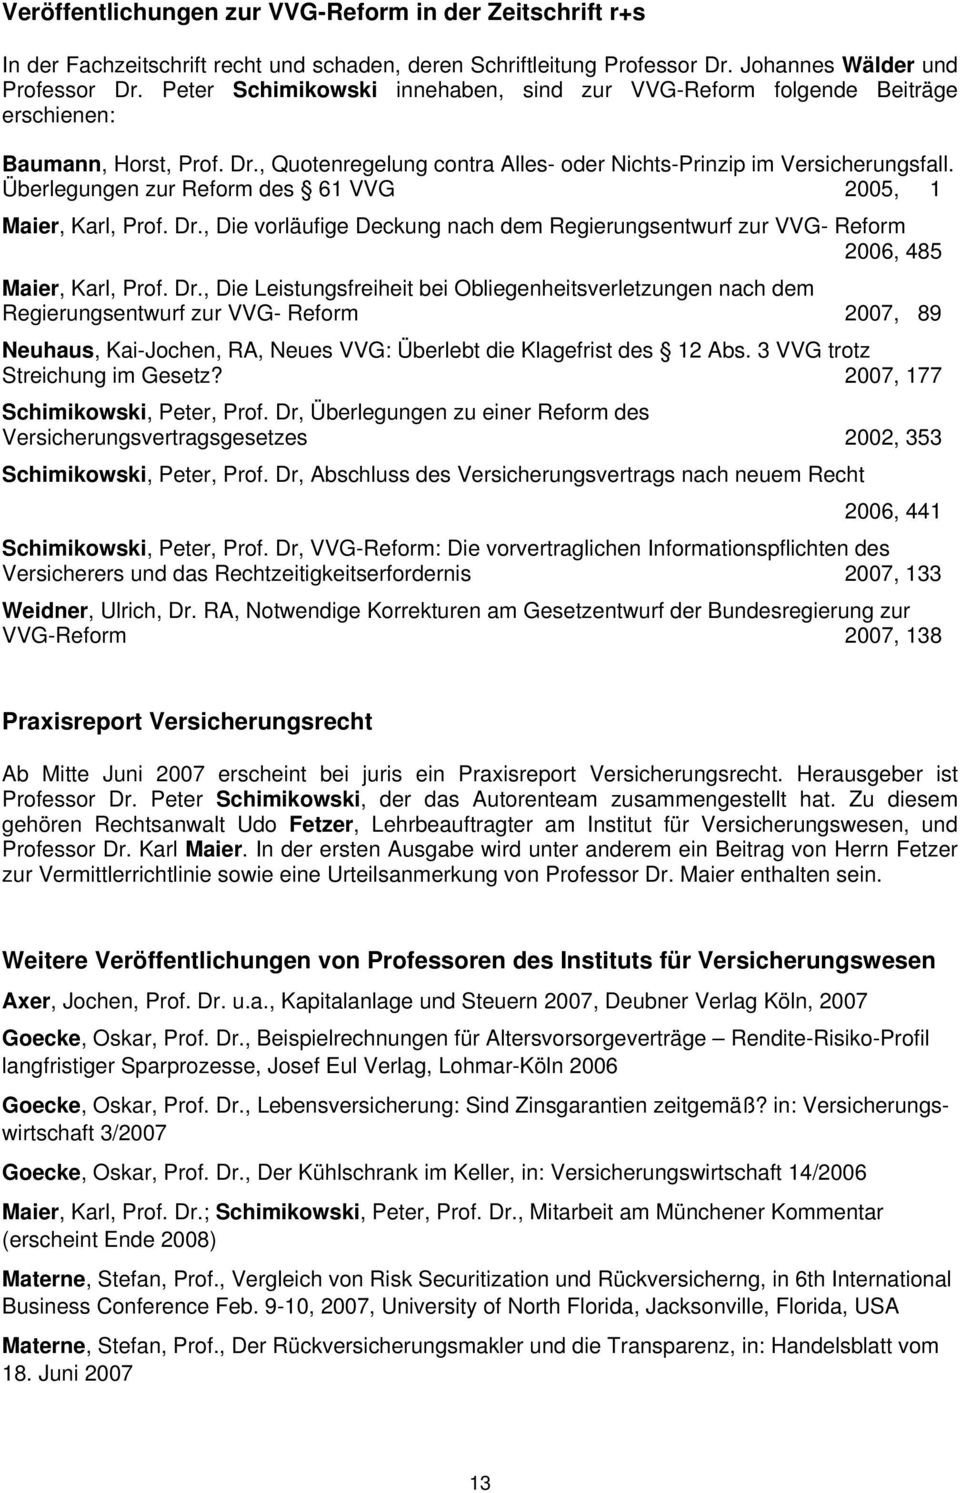 Überlegungen zur Reform des 61 VVG 2005, 1 Maier, Karl, Prof. Dr.